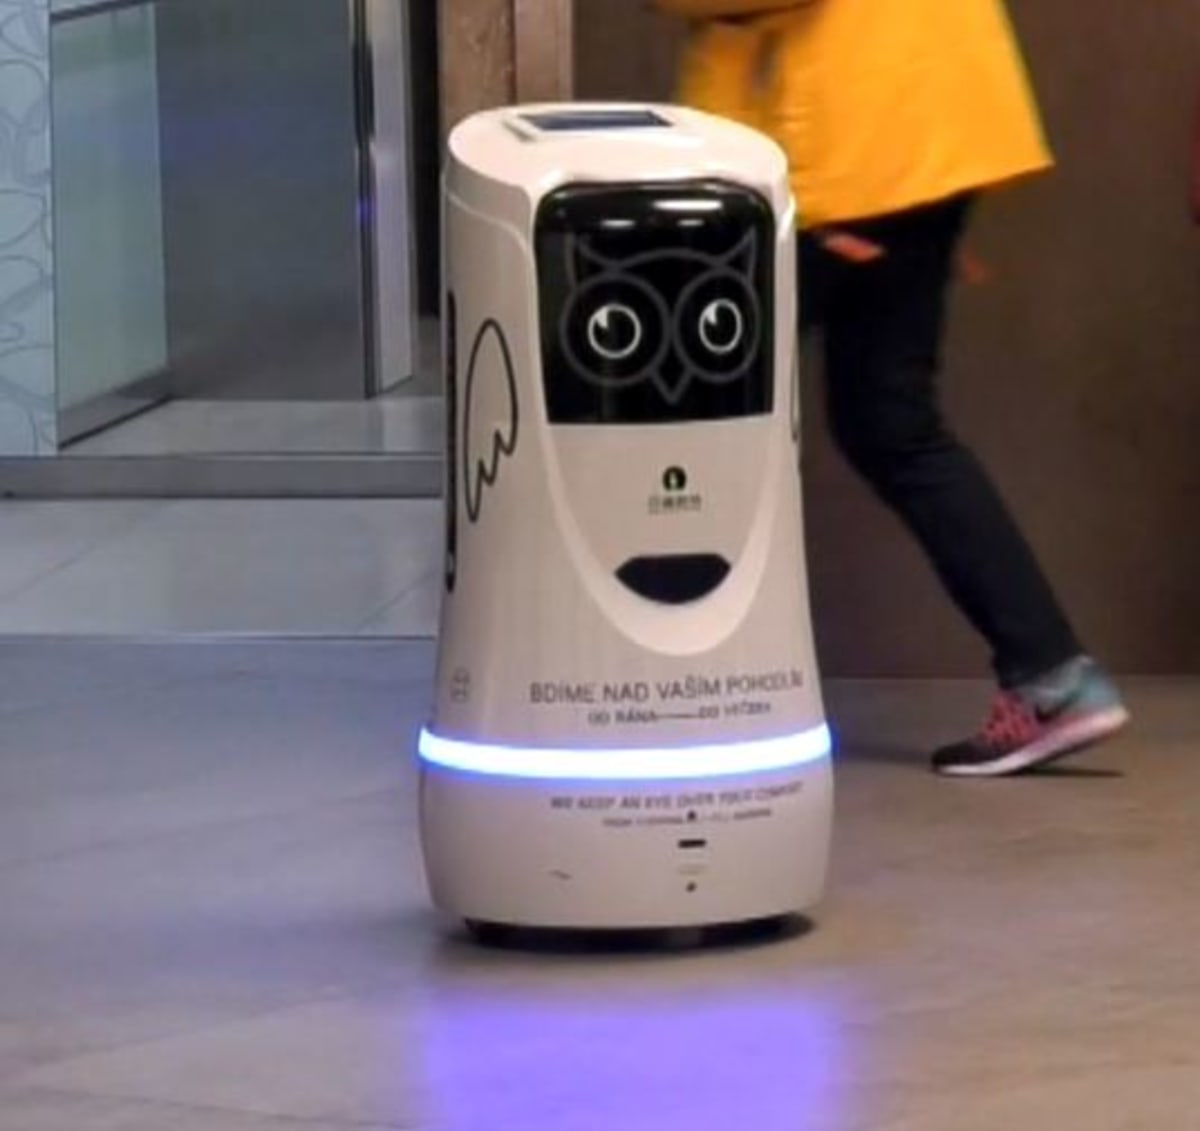 Roboti už obsluhují i v hotelích sítě OREA.